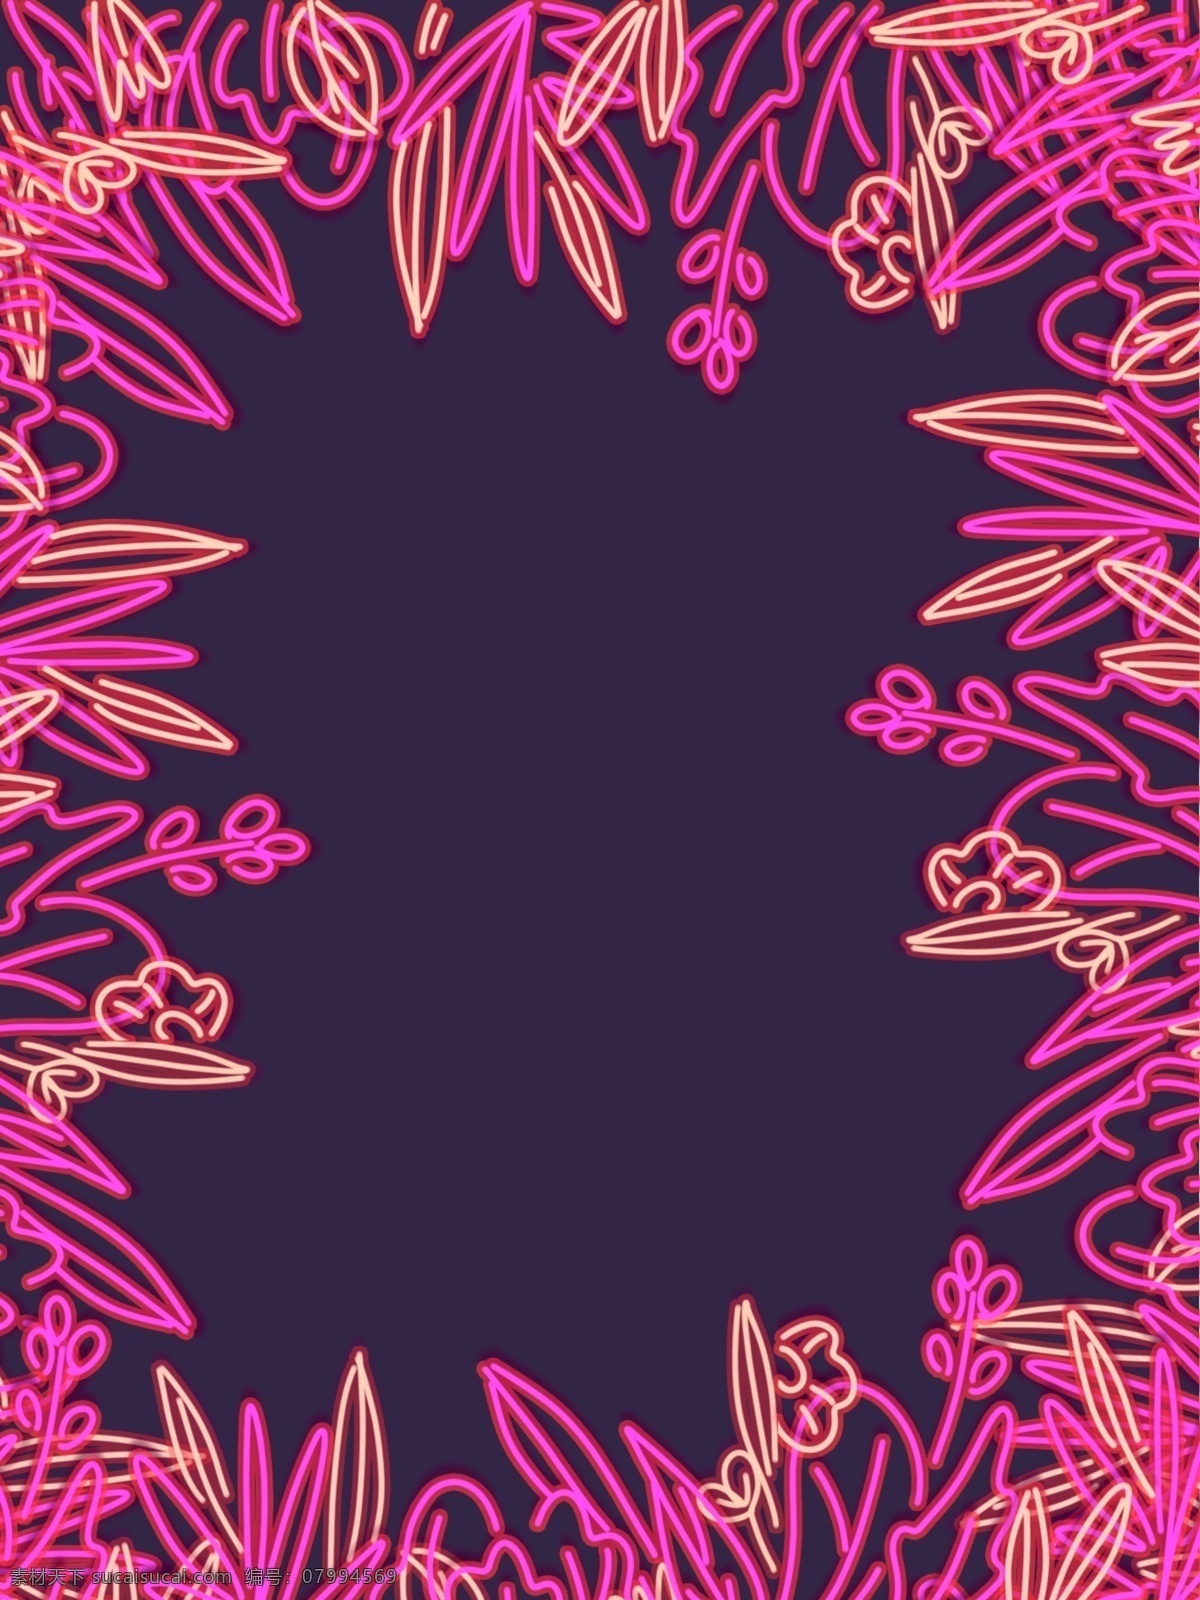 霓虹 插画 线条 植物 粉色 暗色 背景